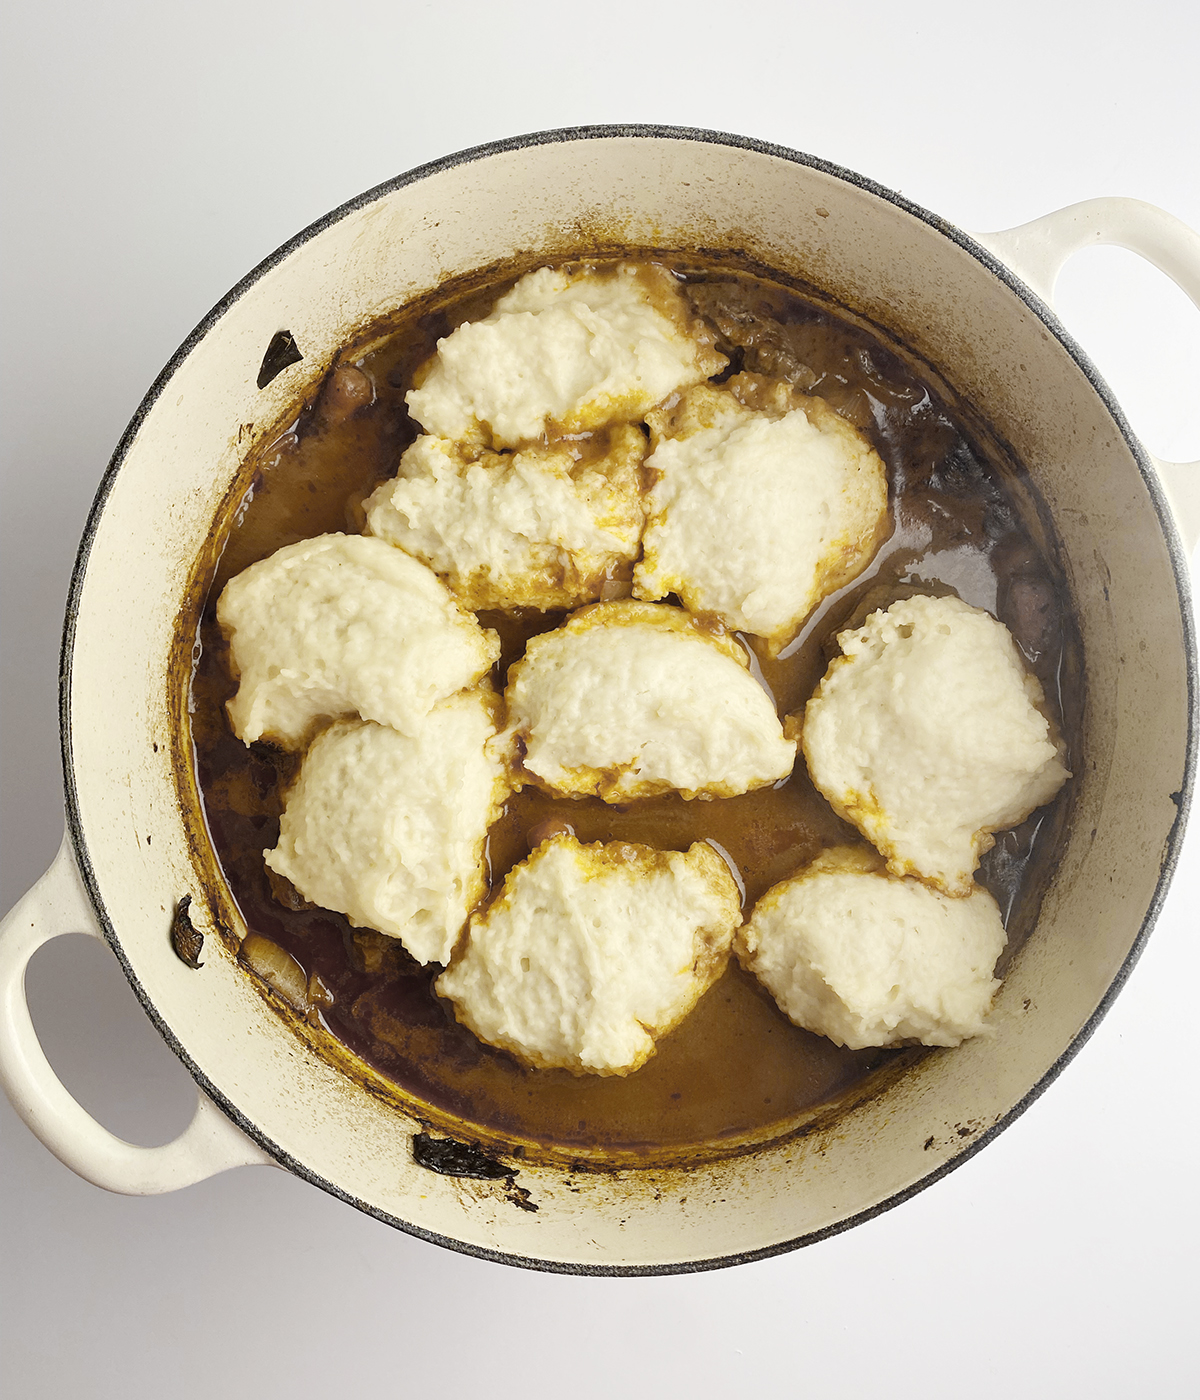 Dumplings in a pot of beef stew.